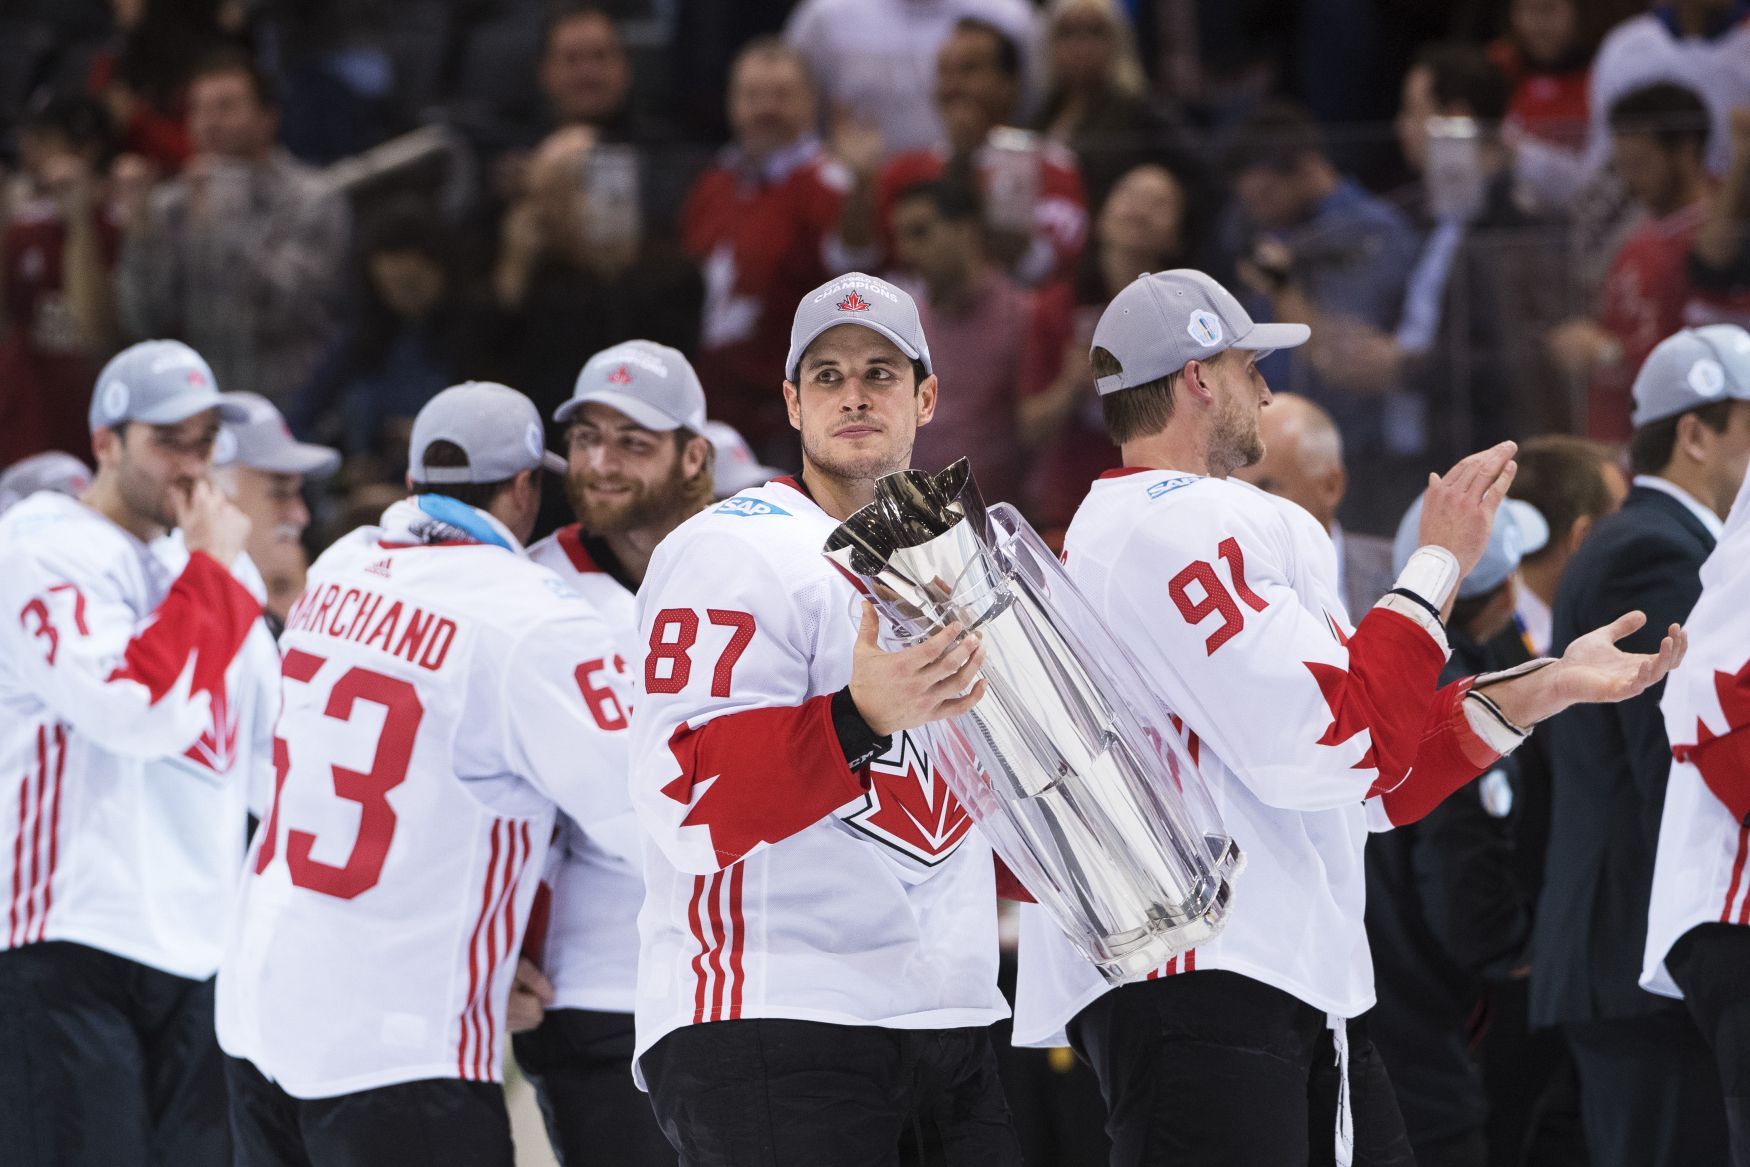 Sidney Crosby, Světový pohár, finále, kanadská hokejová reprezentace